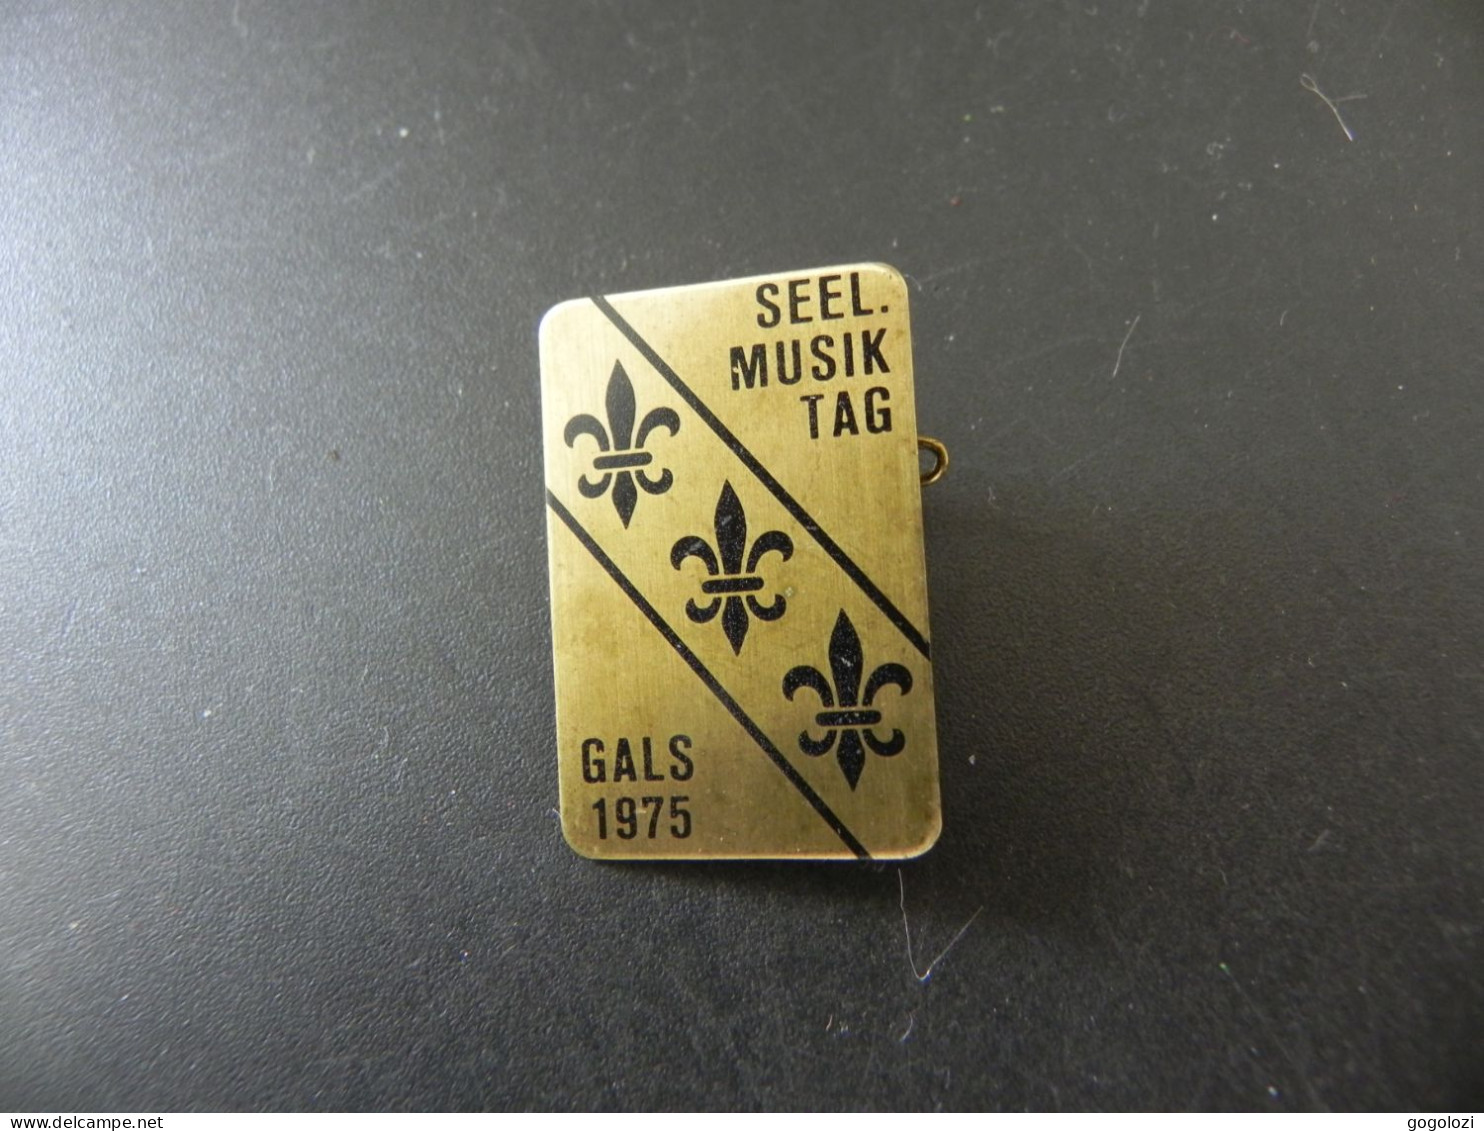 Old Badge Schweiz Suisse Svizzera Switzerland - Seeländischer Musik Tag Gals 1975 - Non Classificati